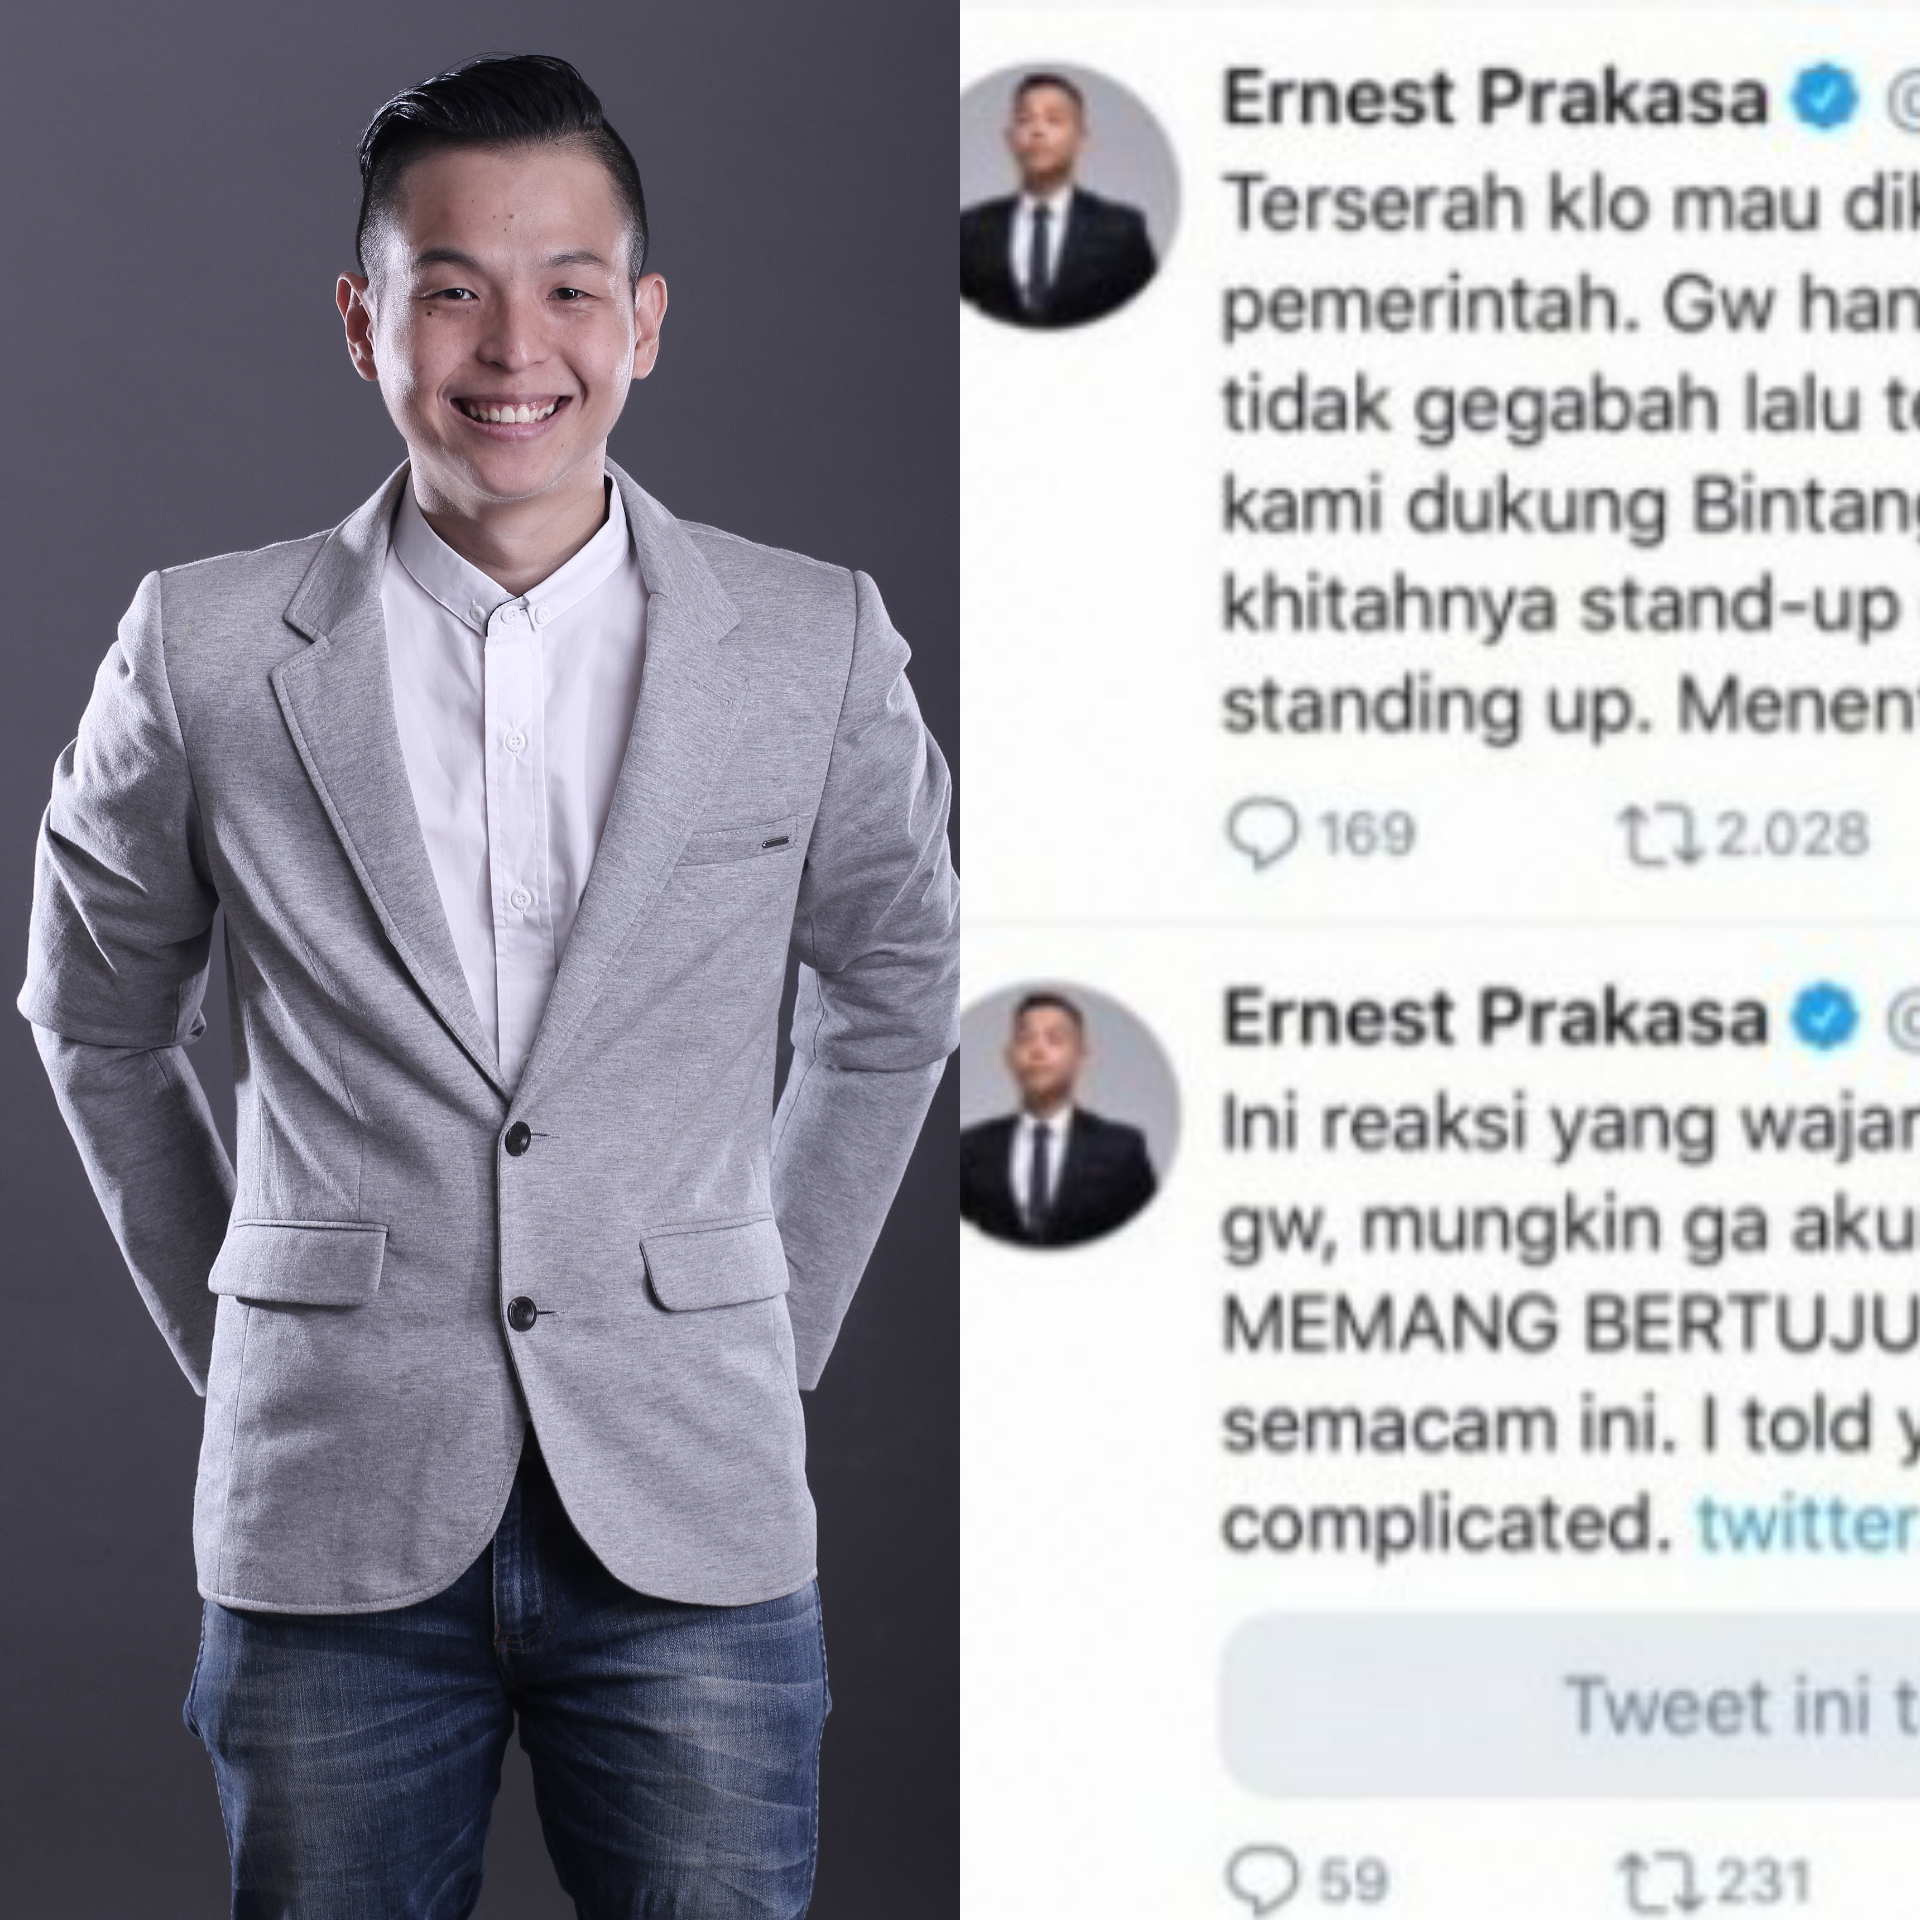 Ernest Prakasa Ungkap Pelaku Fitnah 'Bintang Emon' Pakai Narkoba Nih Gaes, Siapa?